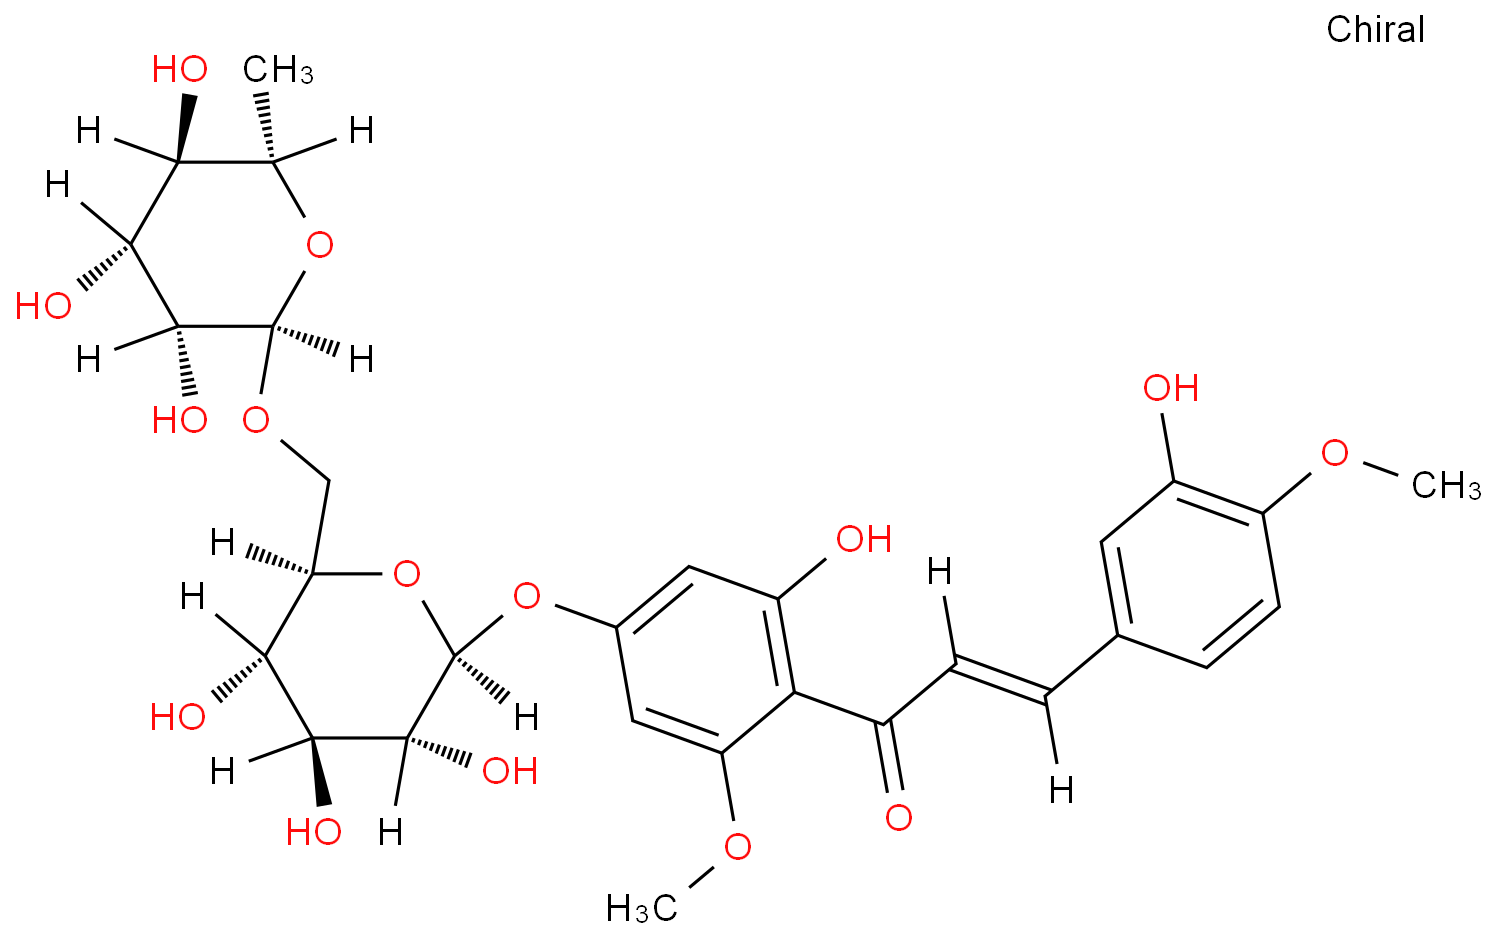 Hesperidin methylchalcone